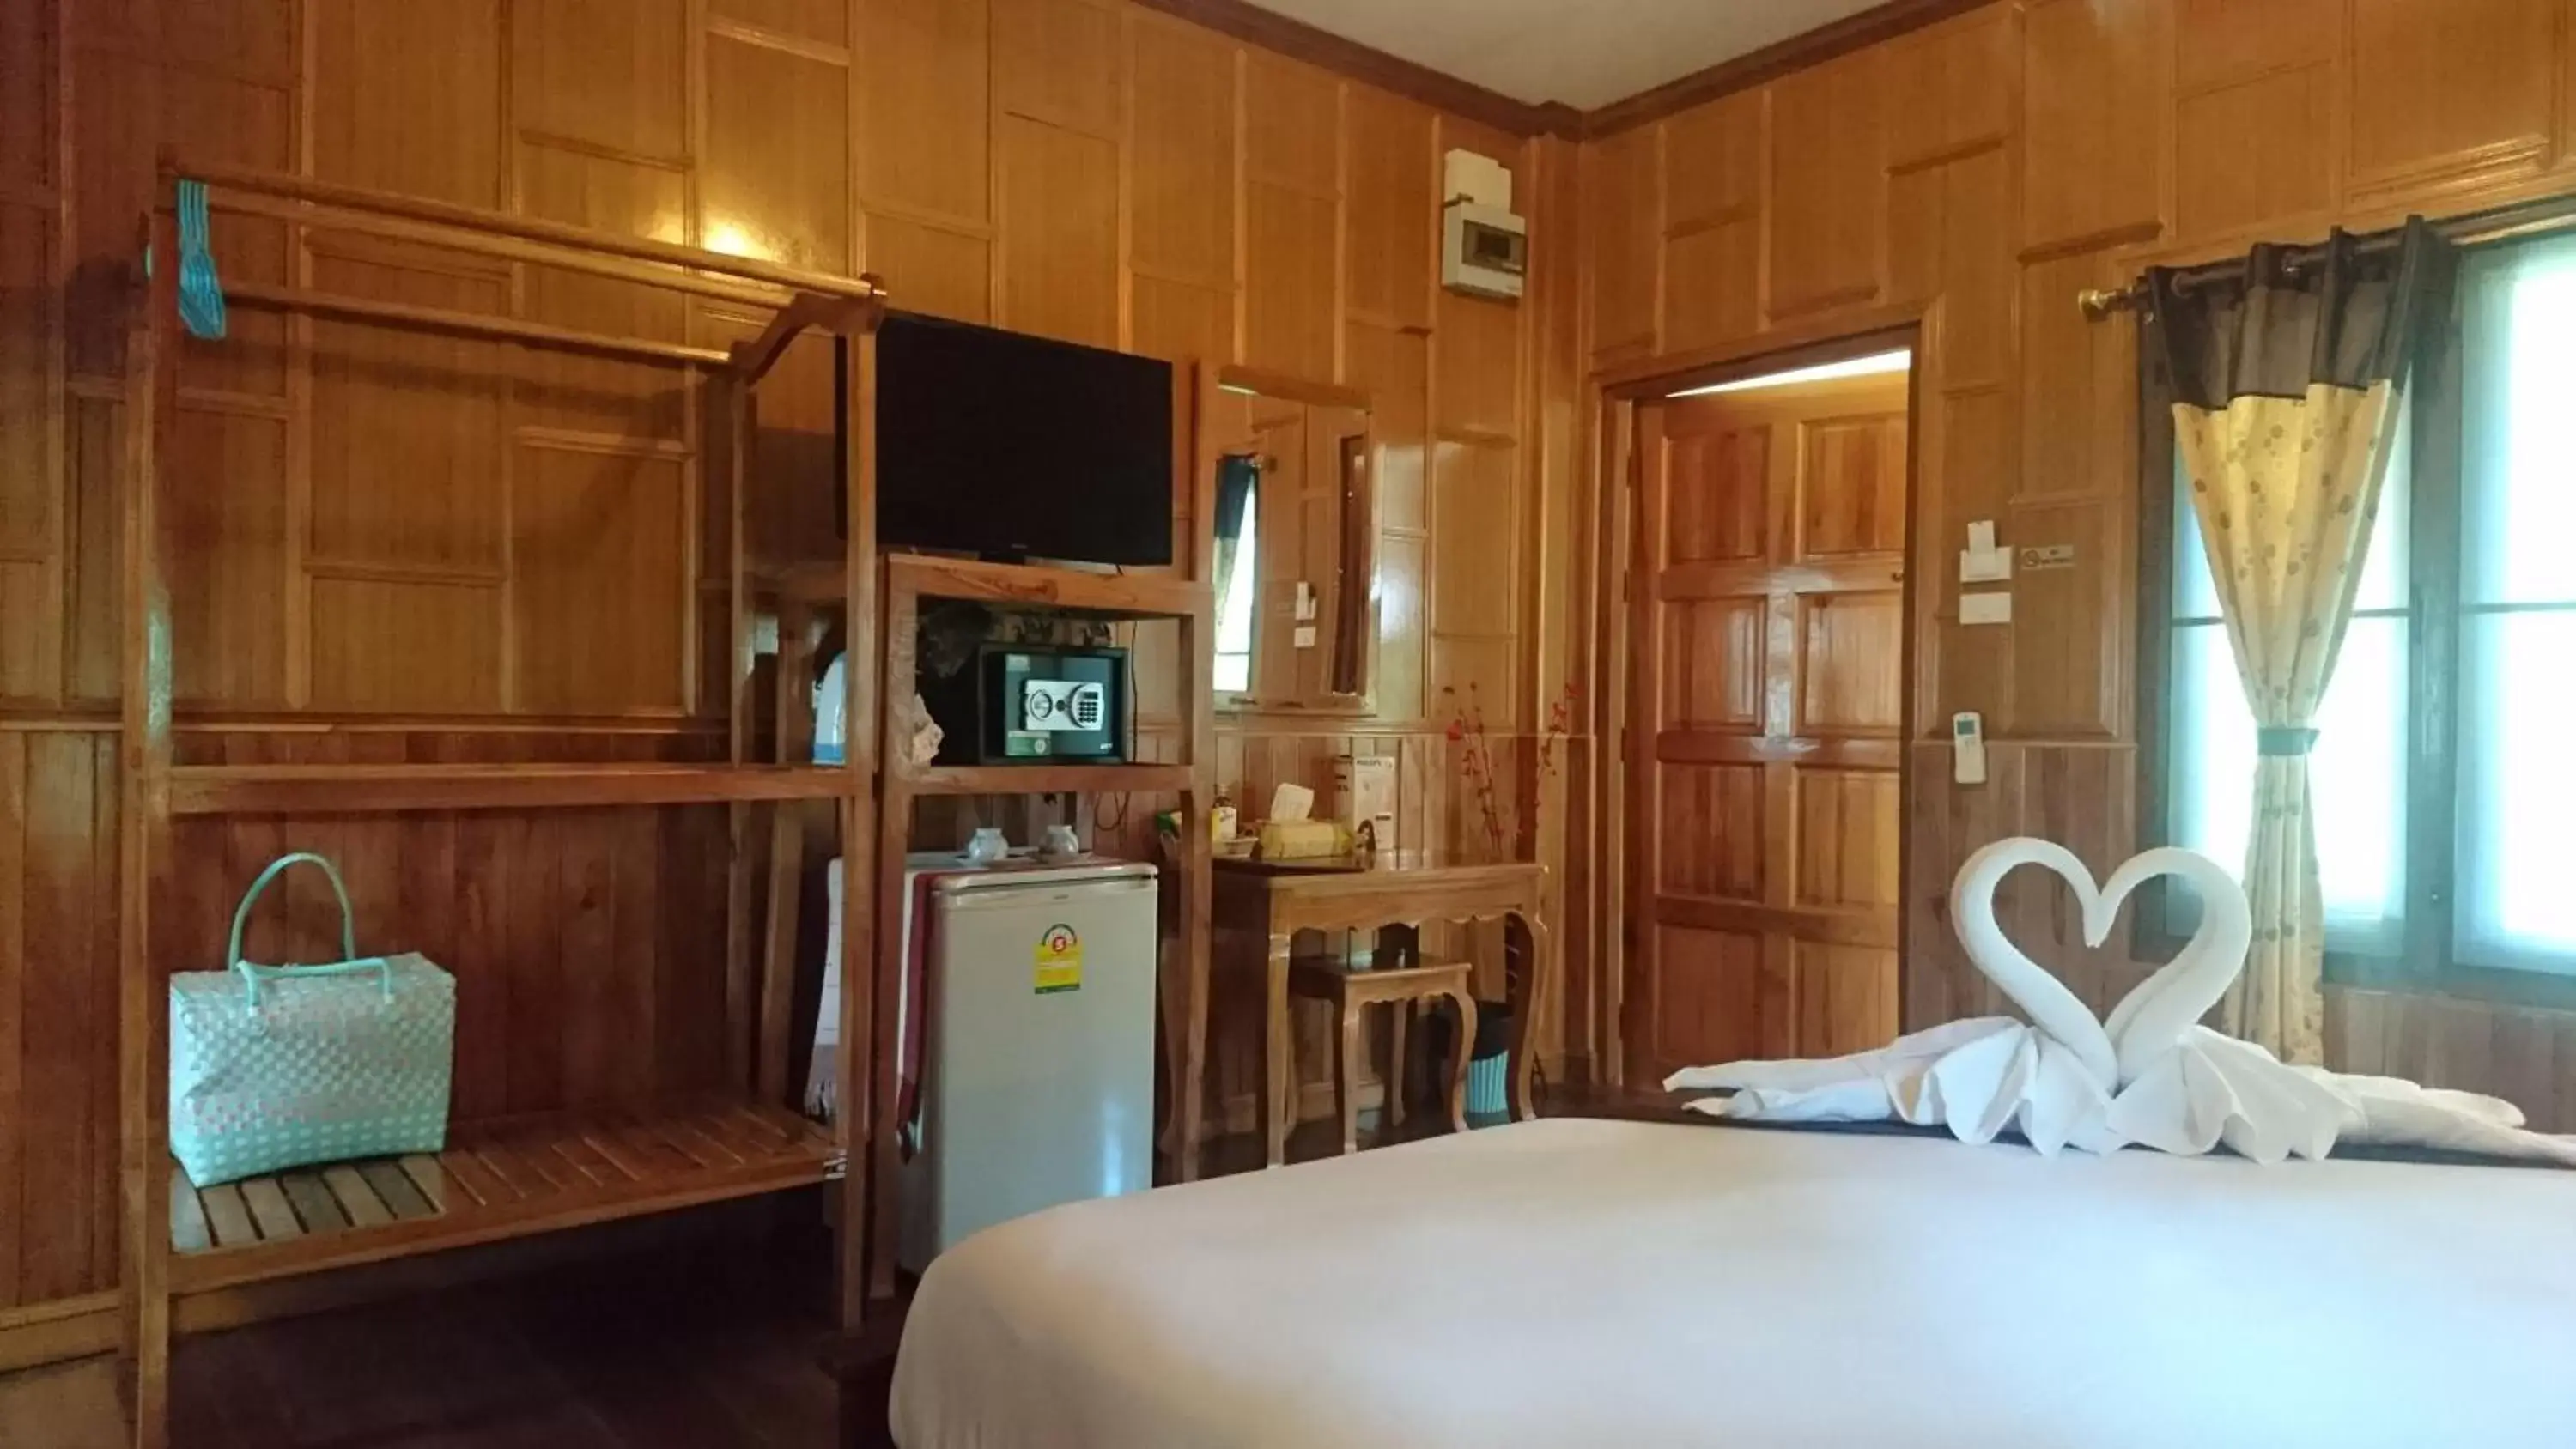 Bedroom, TV/Entertainment Center in Macura Resort